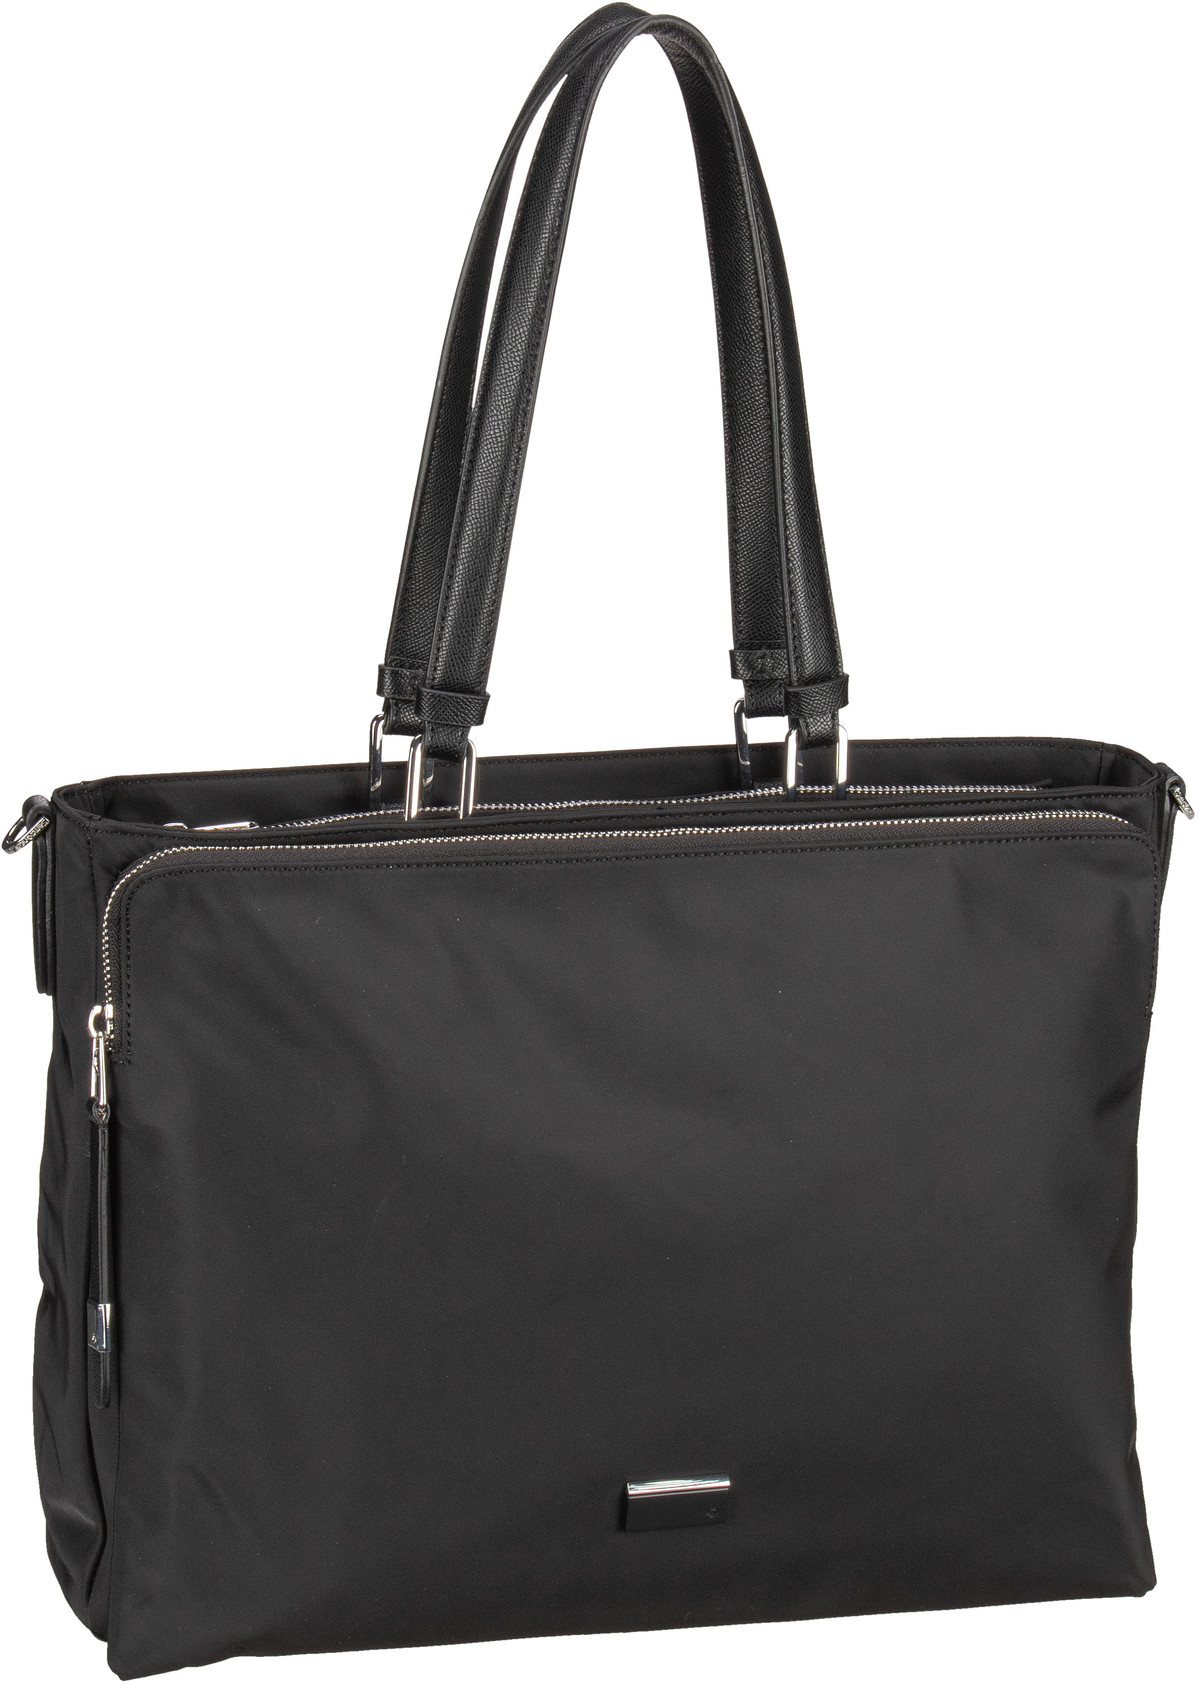 Samsonite Be-Her Shopping Bag 14.1'' - Black